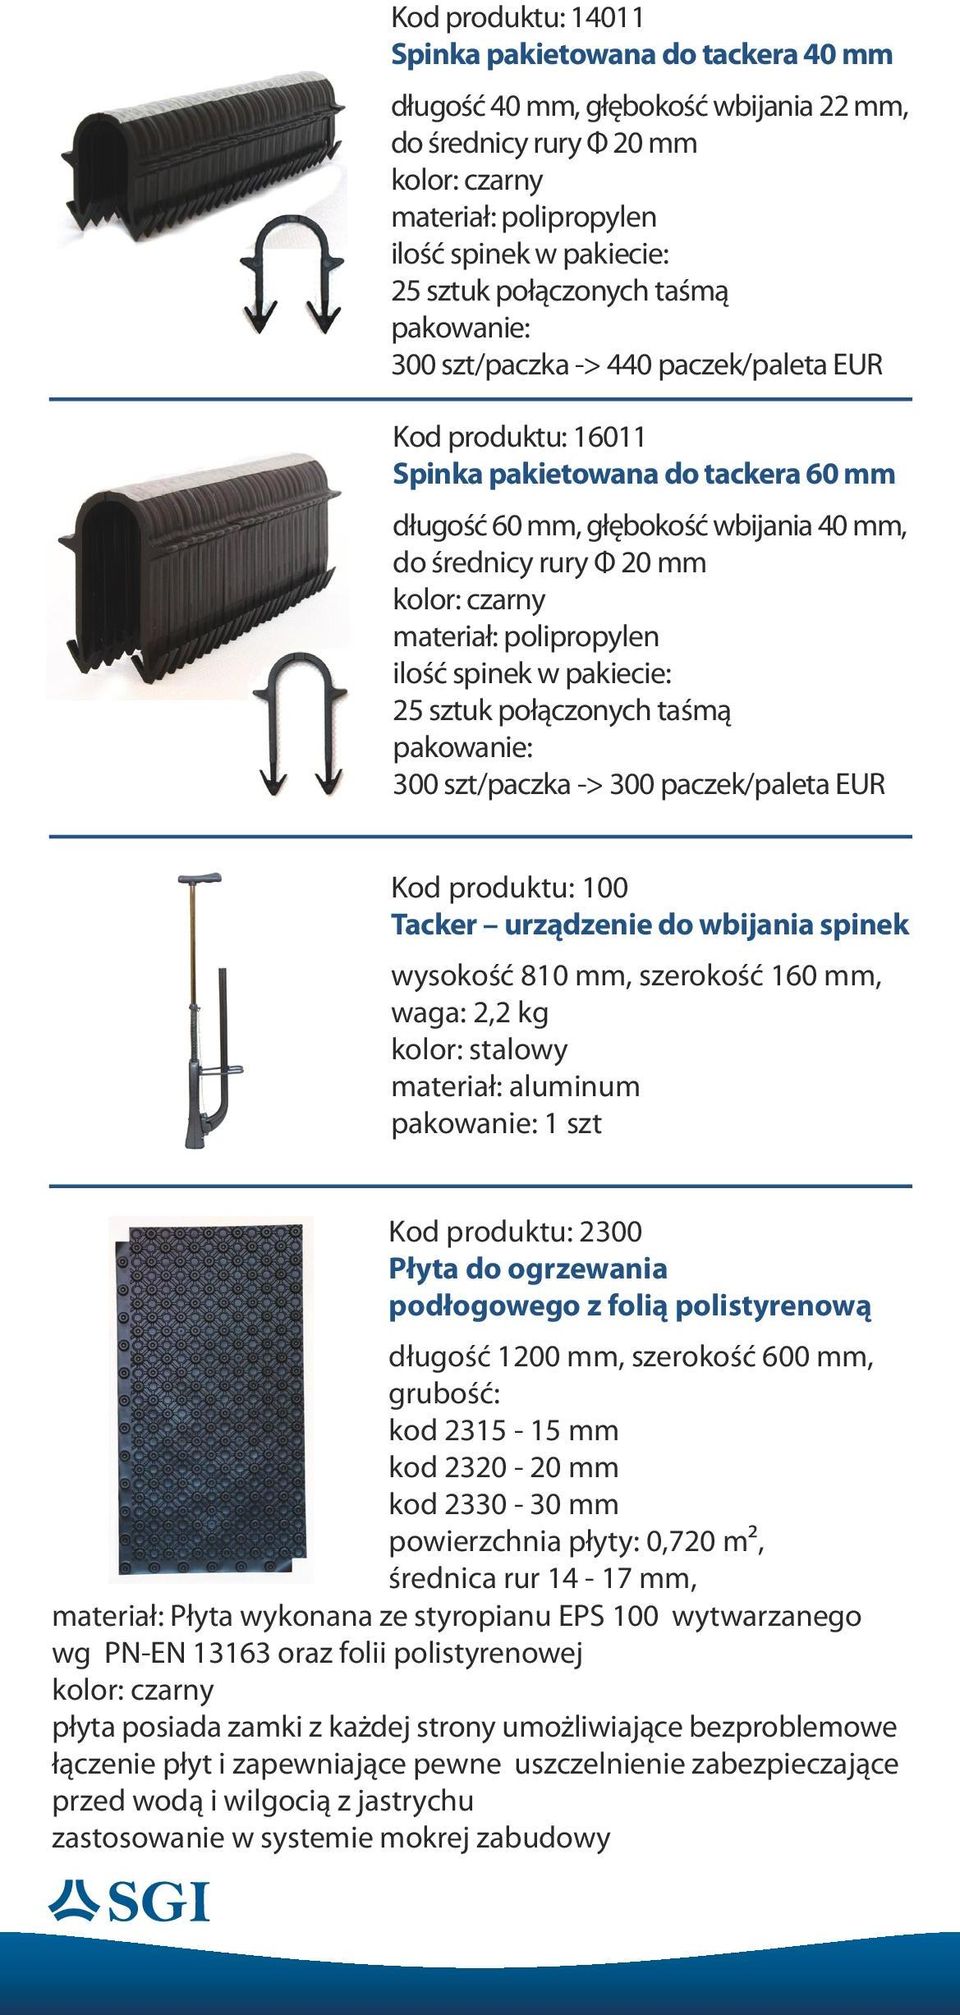 szt/paczka -> 300 paczek/paleta EUR Kod produktu: 100 Tacker urządzenie do wbijania spinek wysokość 810 mm, szerokość 160 mm, waga: 2,2 kg kolor: stalowy materiał: aluminum 1 szt Kod produktu: 2300